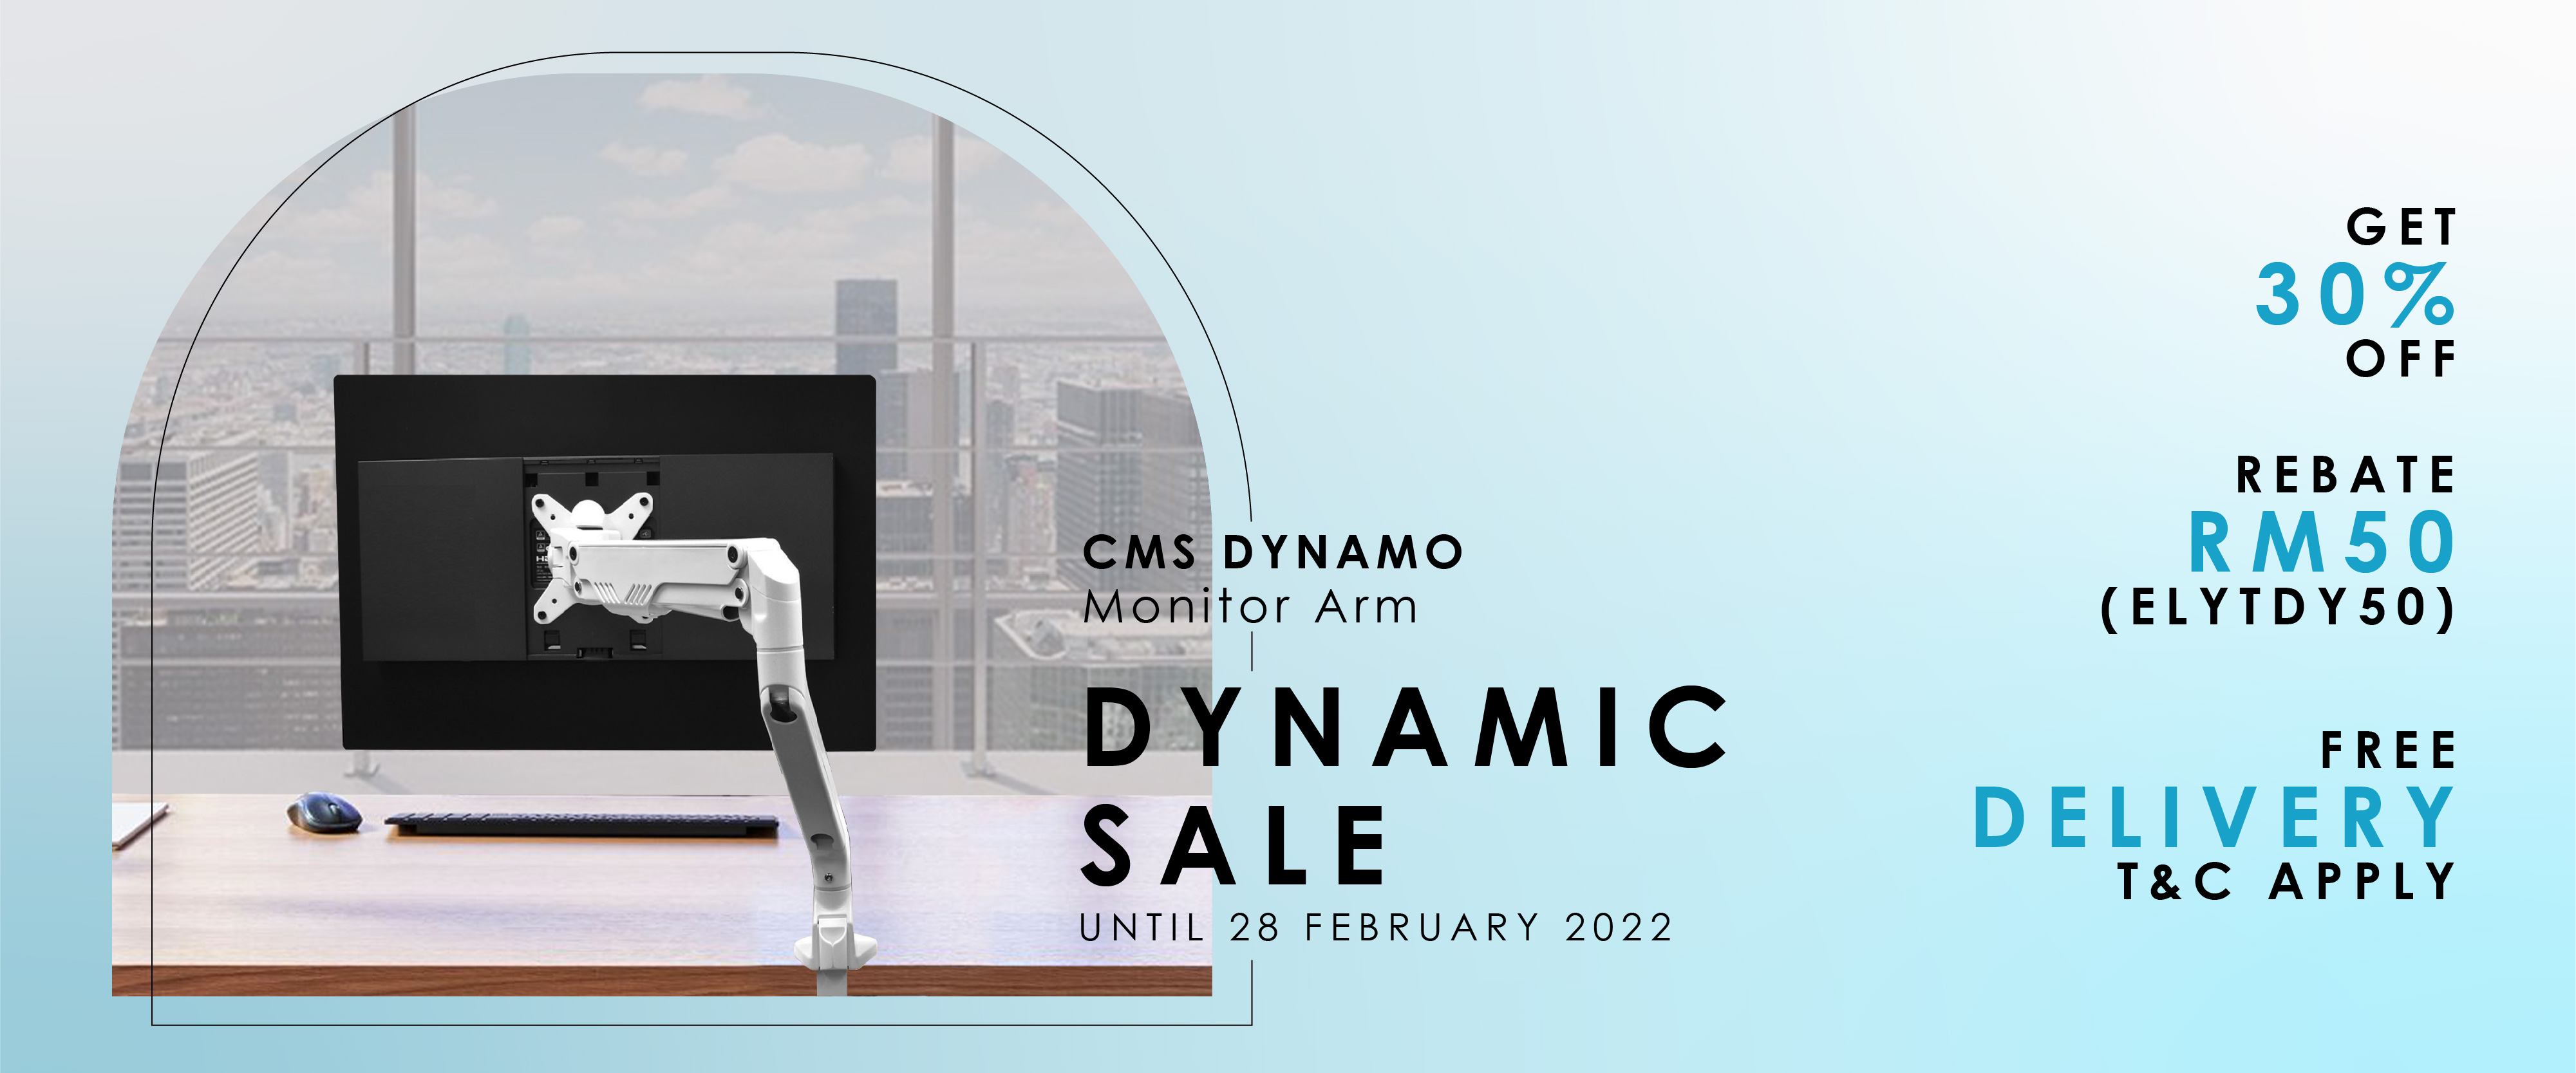 Dynamic Sale